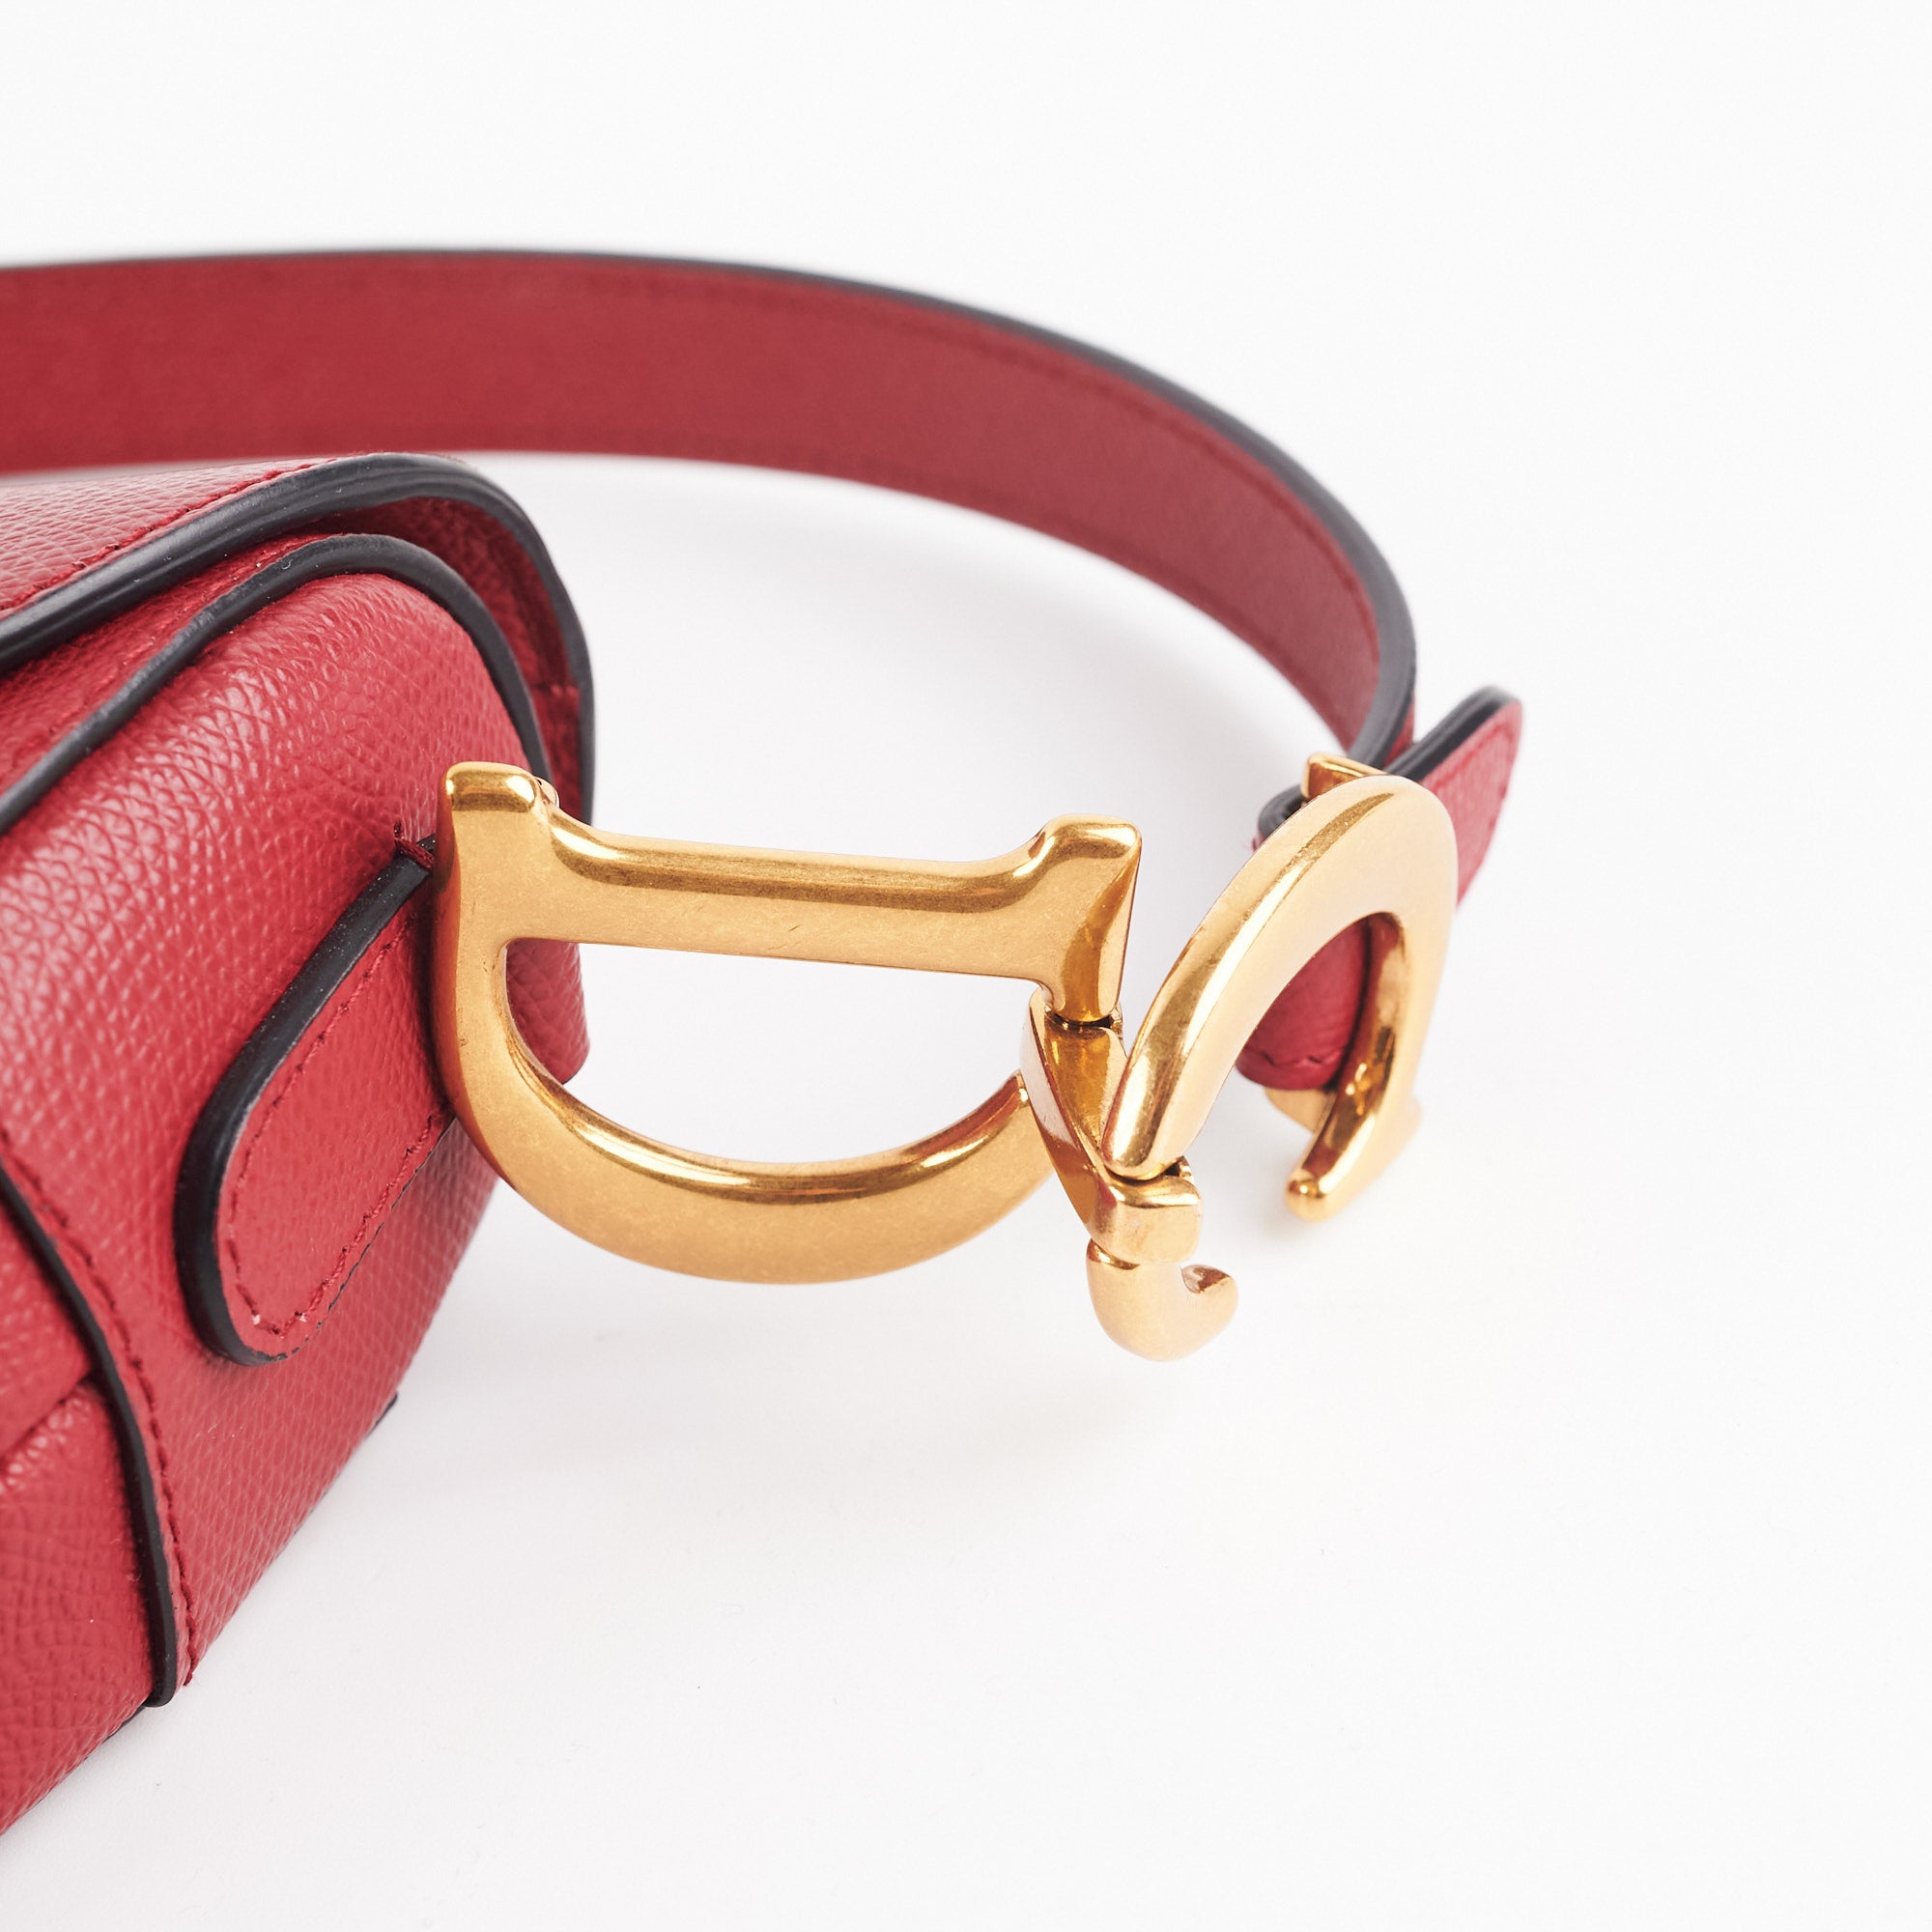 Dior Saddle Bag Red - THE PURSE AFFAIR